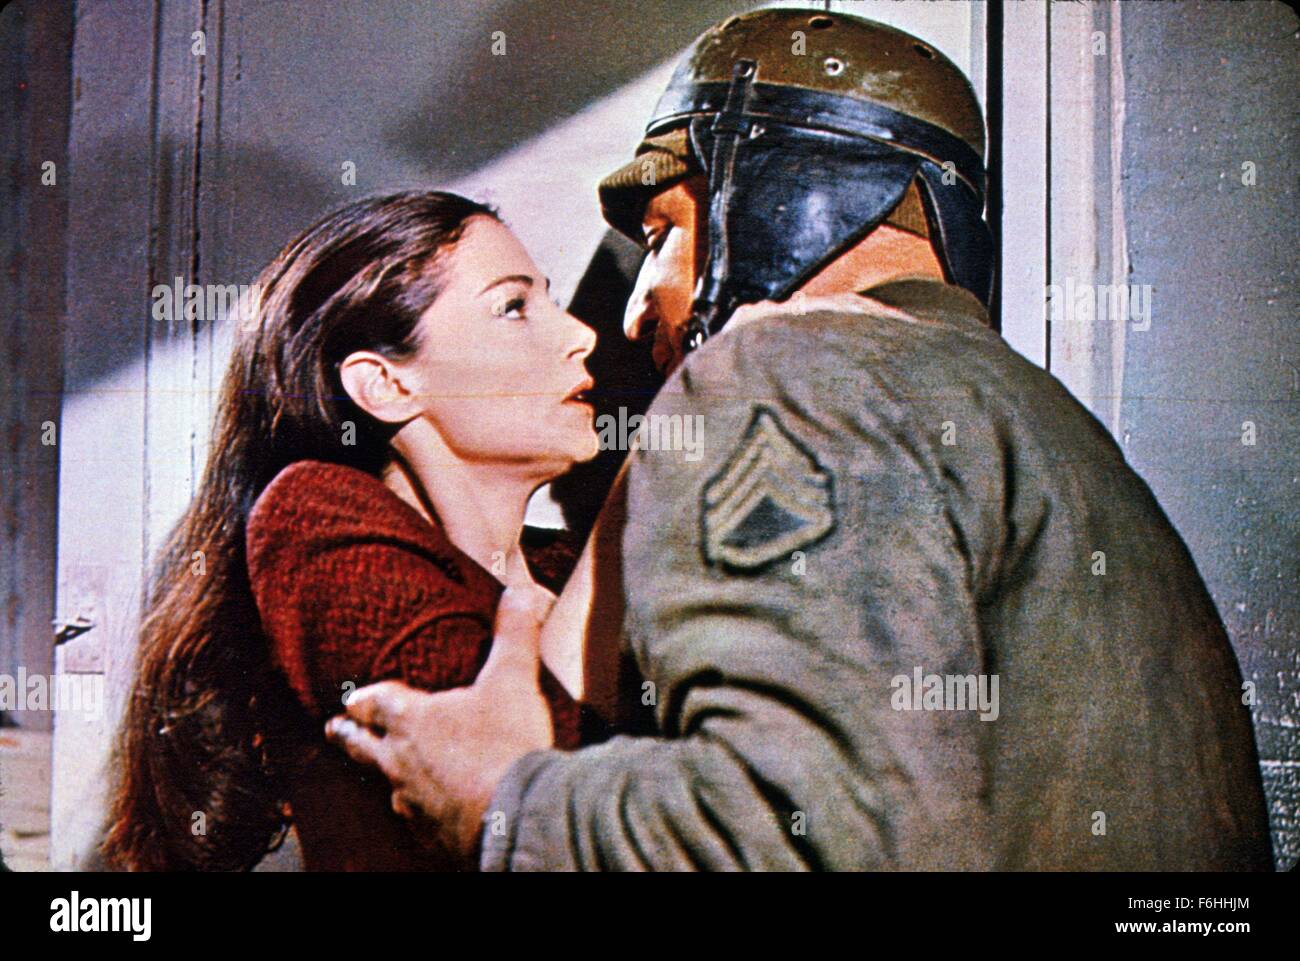 1965, il titolo del film: la battaglia di Bulge, Direttore: KEN ANNAKIN, Studio: WARNER, nella foto: PIER ANGELI, KEN ANNAKIN. (Credito Immagine: SNAP) Foto Stock